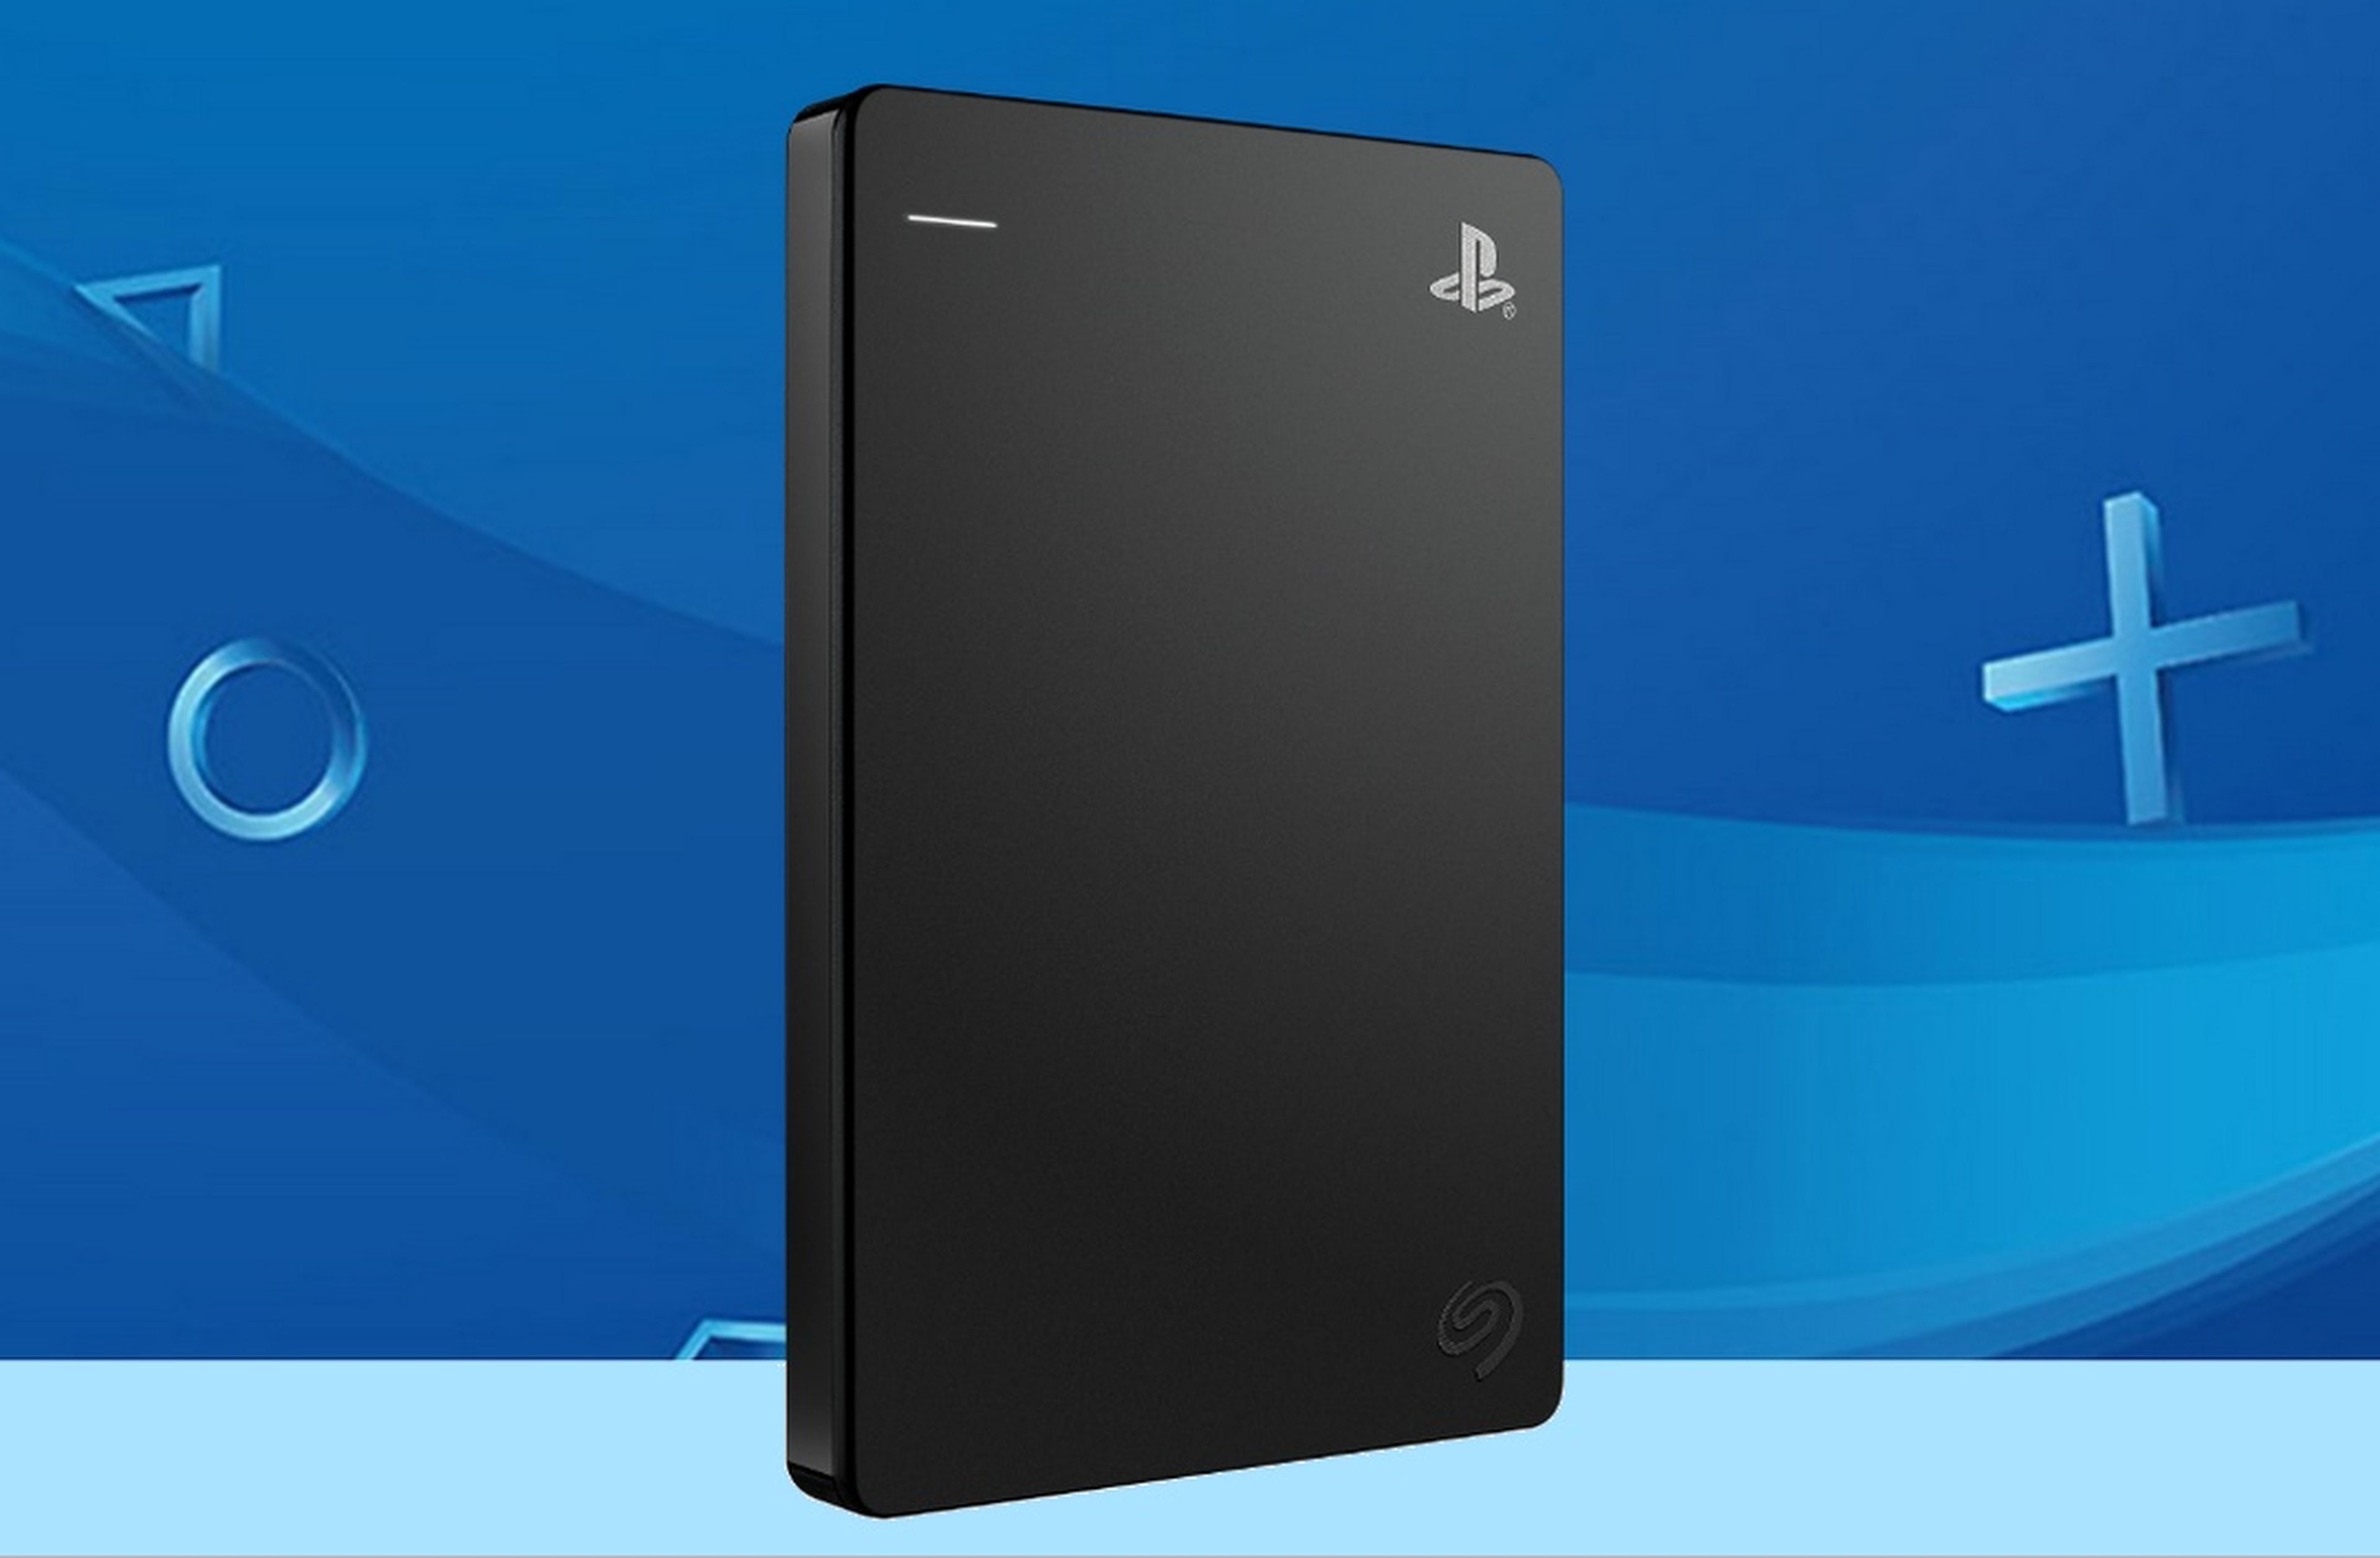 Sony presenta nuevo disco externo oficial de 2 para PS4 | Computer Hoy